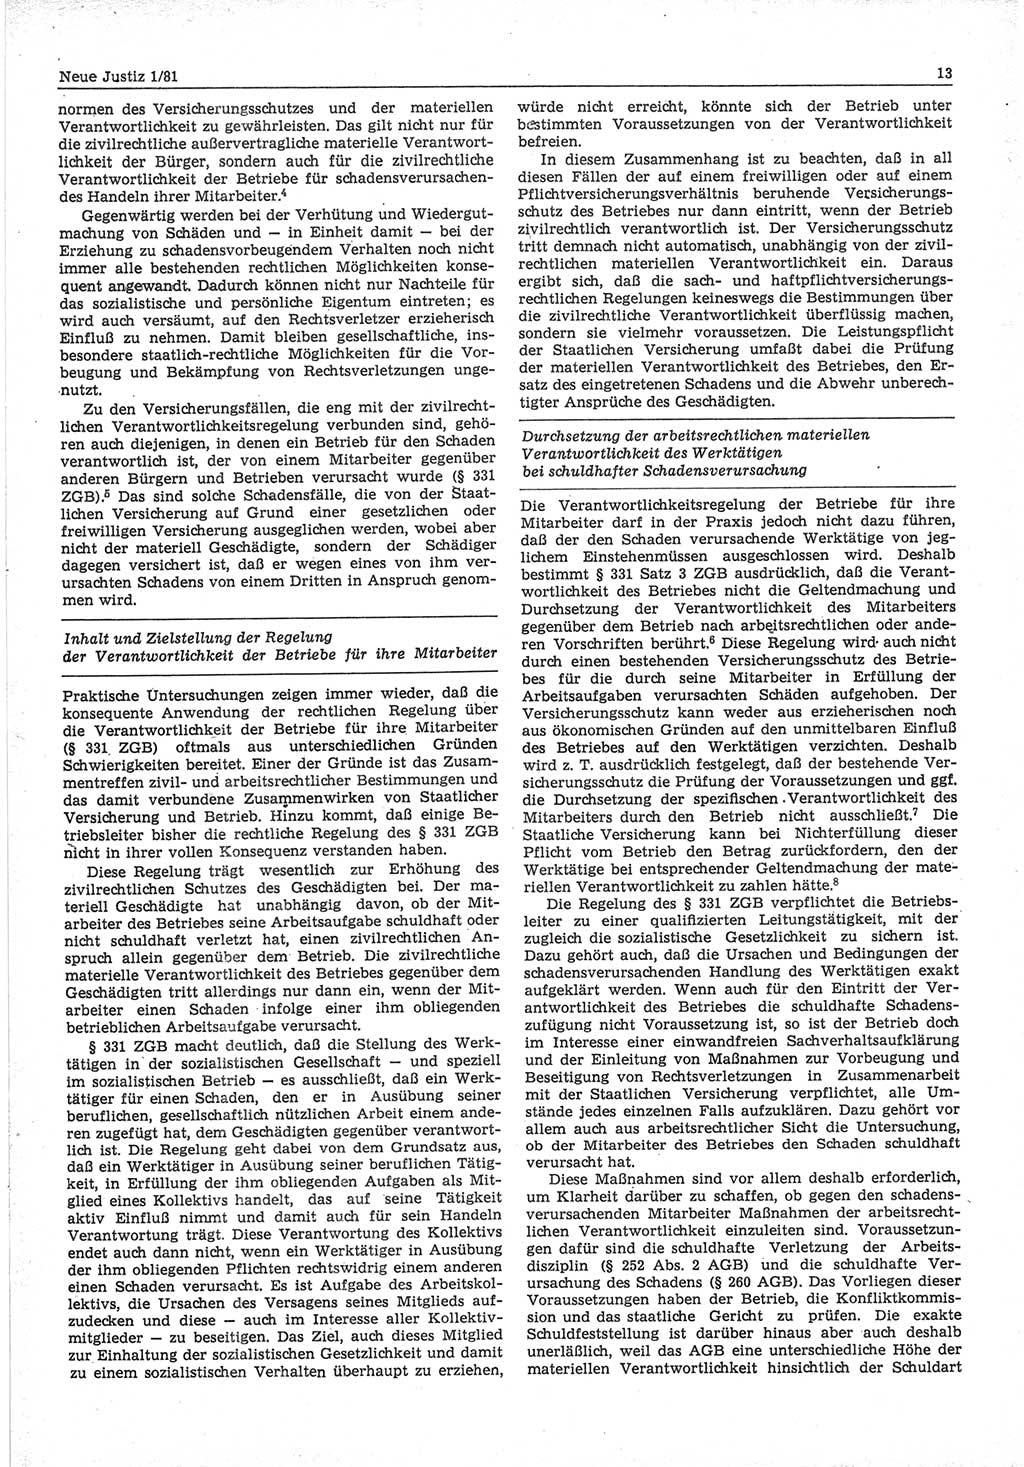 Neue Justiz (NJ), Zeitschrift für sozialistisches Recht und Gesetzlichkeit [Deutsche Demokratische Republik (DDR)], 35. Jahrgang 1981, Seite 13 (NJ DDR 1981, S. 13)